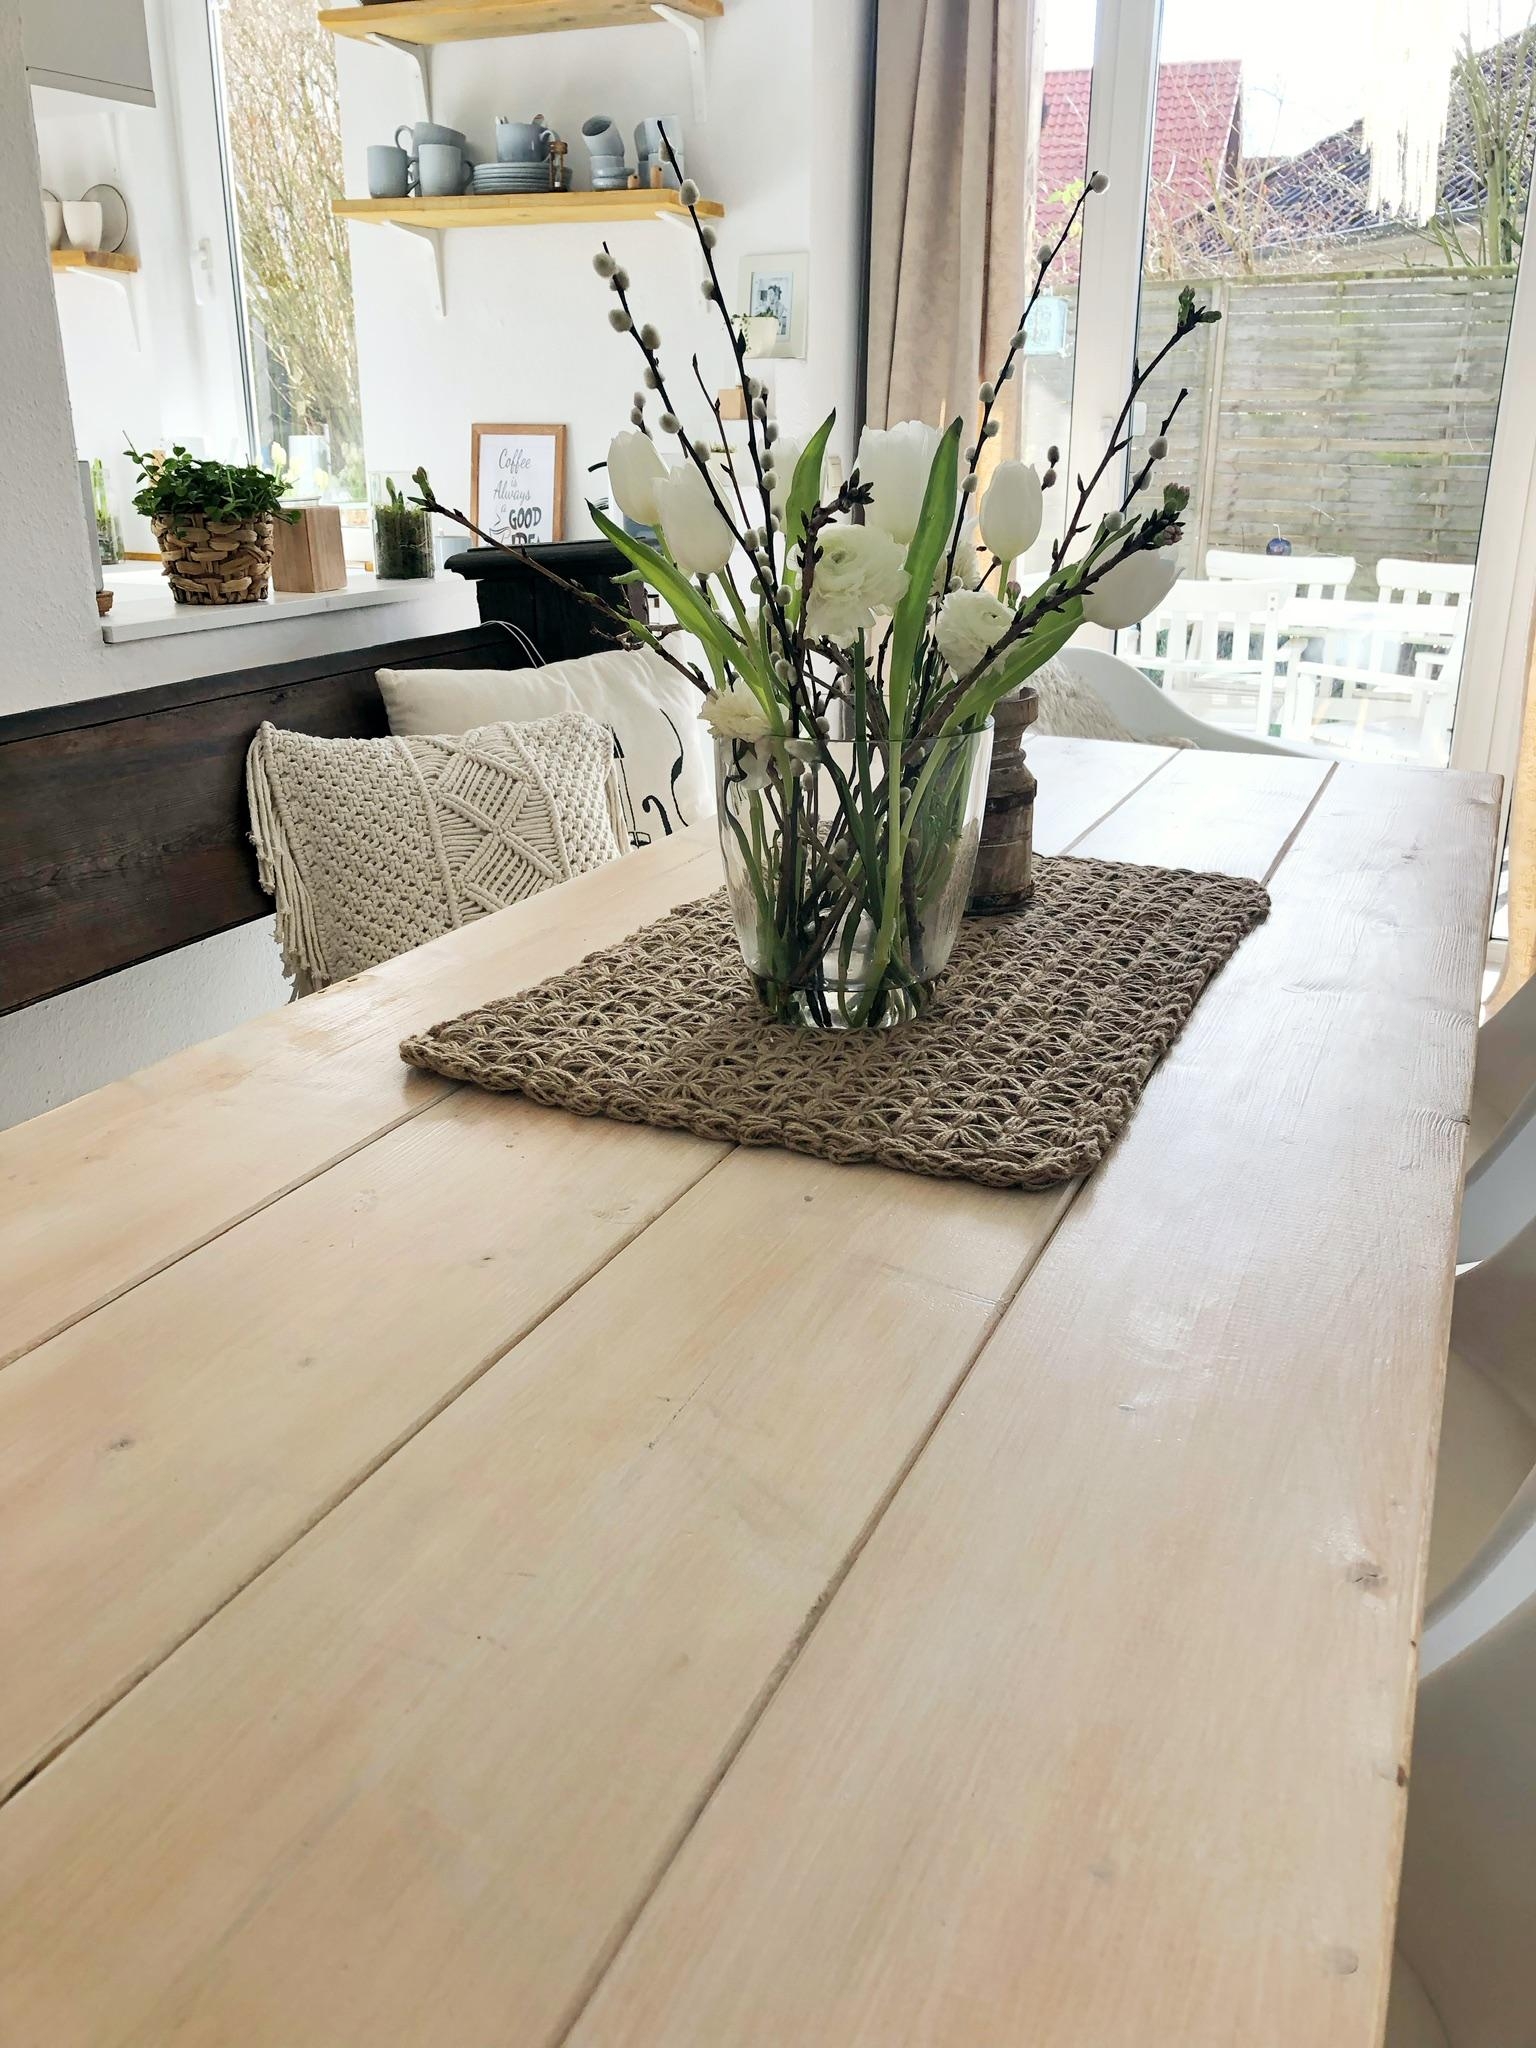 Tischdekoration halte ich minimalistisch 
#tischdeko#couchstyle#deko#table#solebich